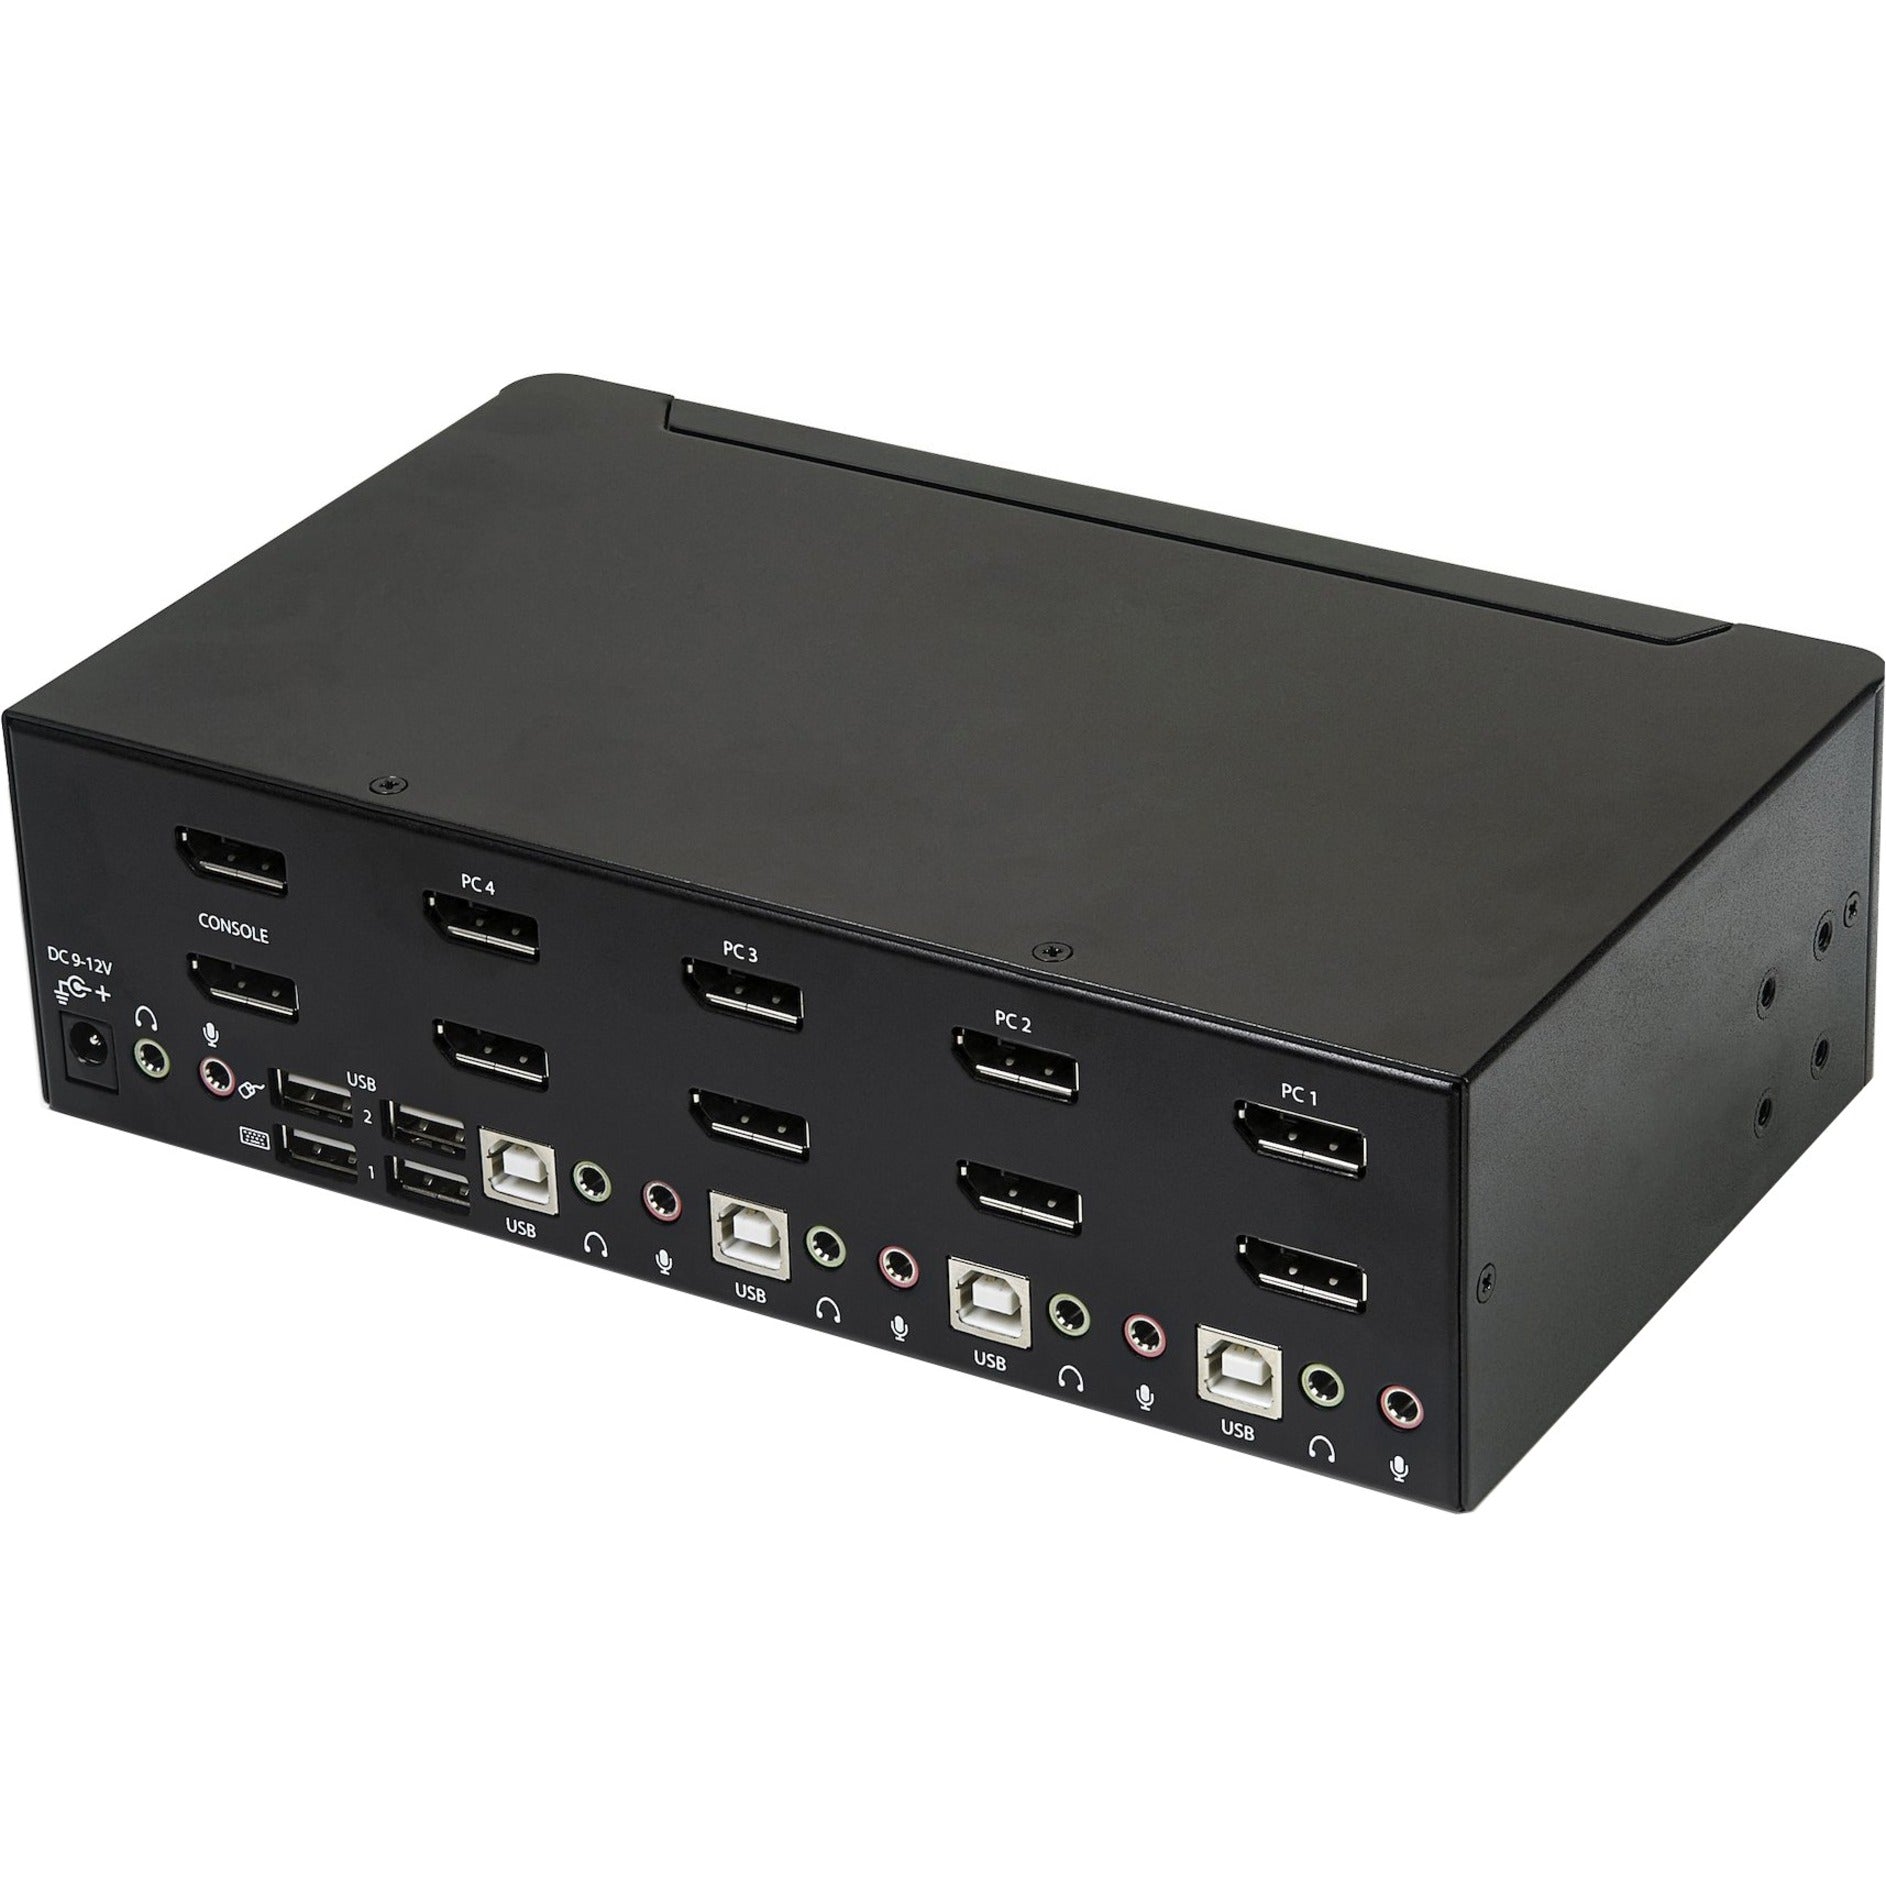 Marca: StarTech.com  Conmutador KVM Dual DisplayPort de 4 puertos StarTech.com SV431DPDDUA2 - 4K 60Hz USB Cumple con TAA